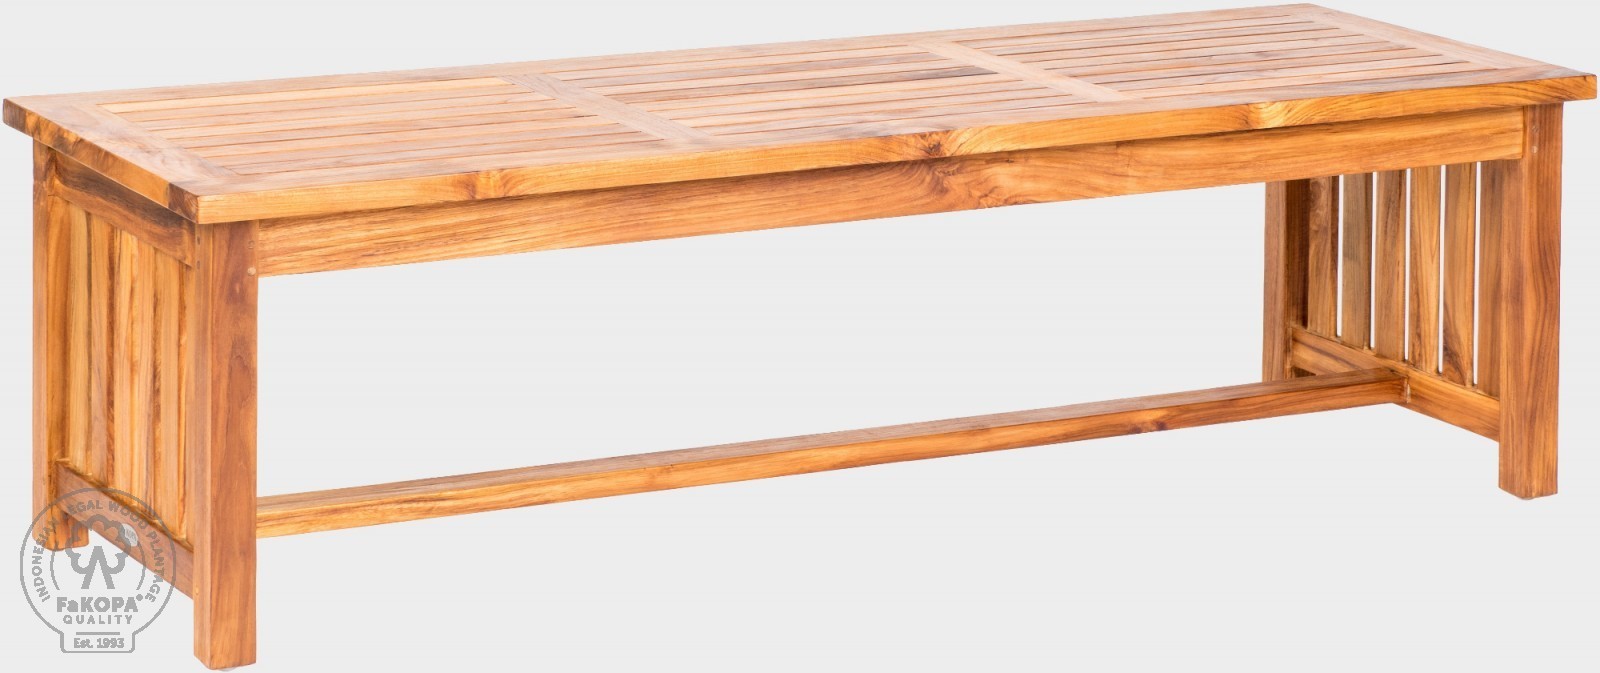 FaKOPA s. r. o. ROSALINE - originální konferenční stolek z teaku 170 x 65 cm, teak